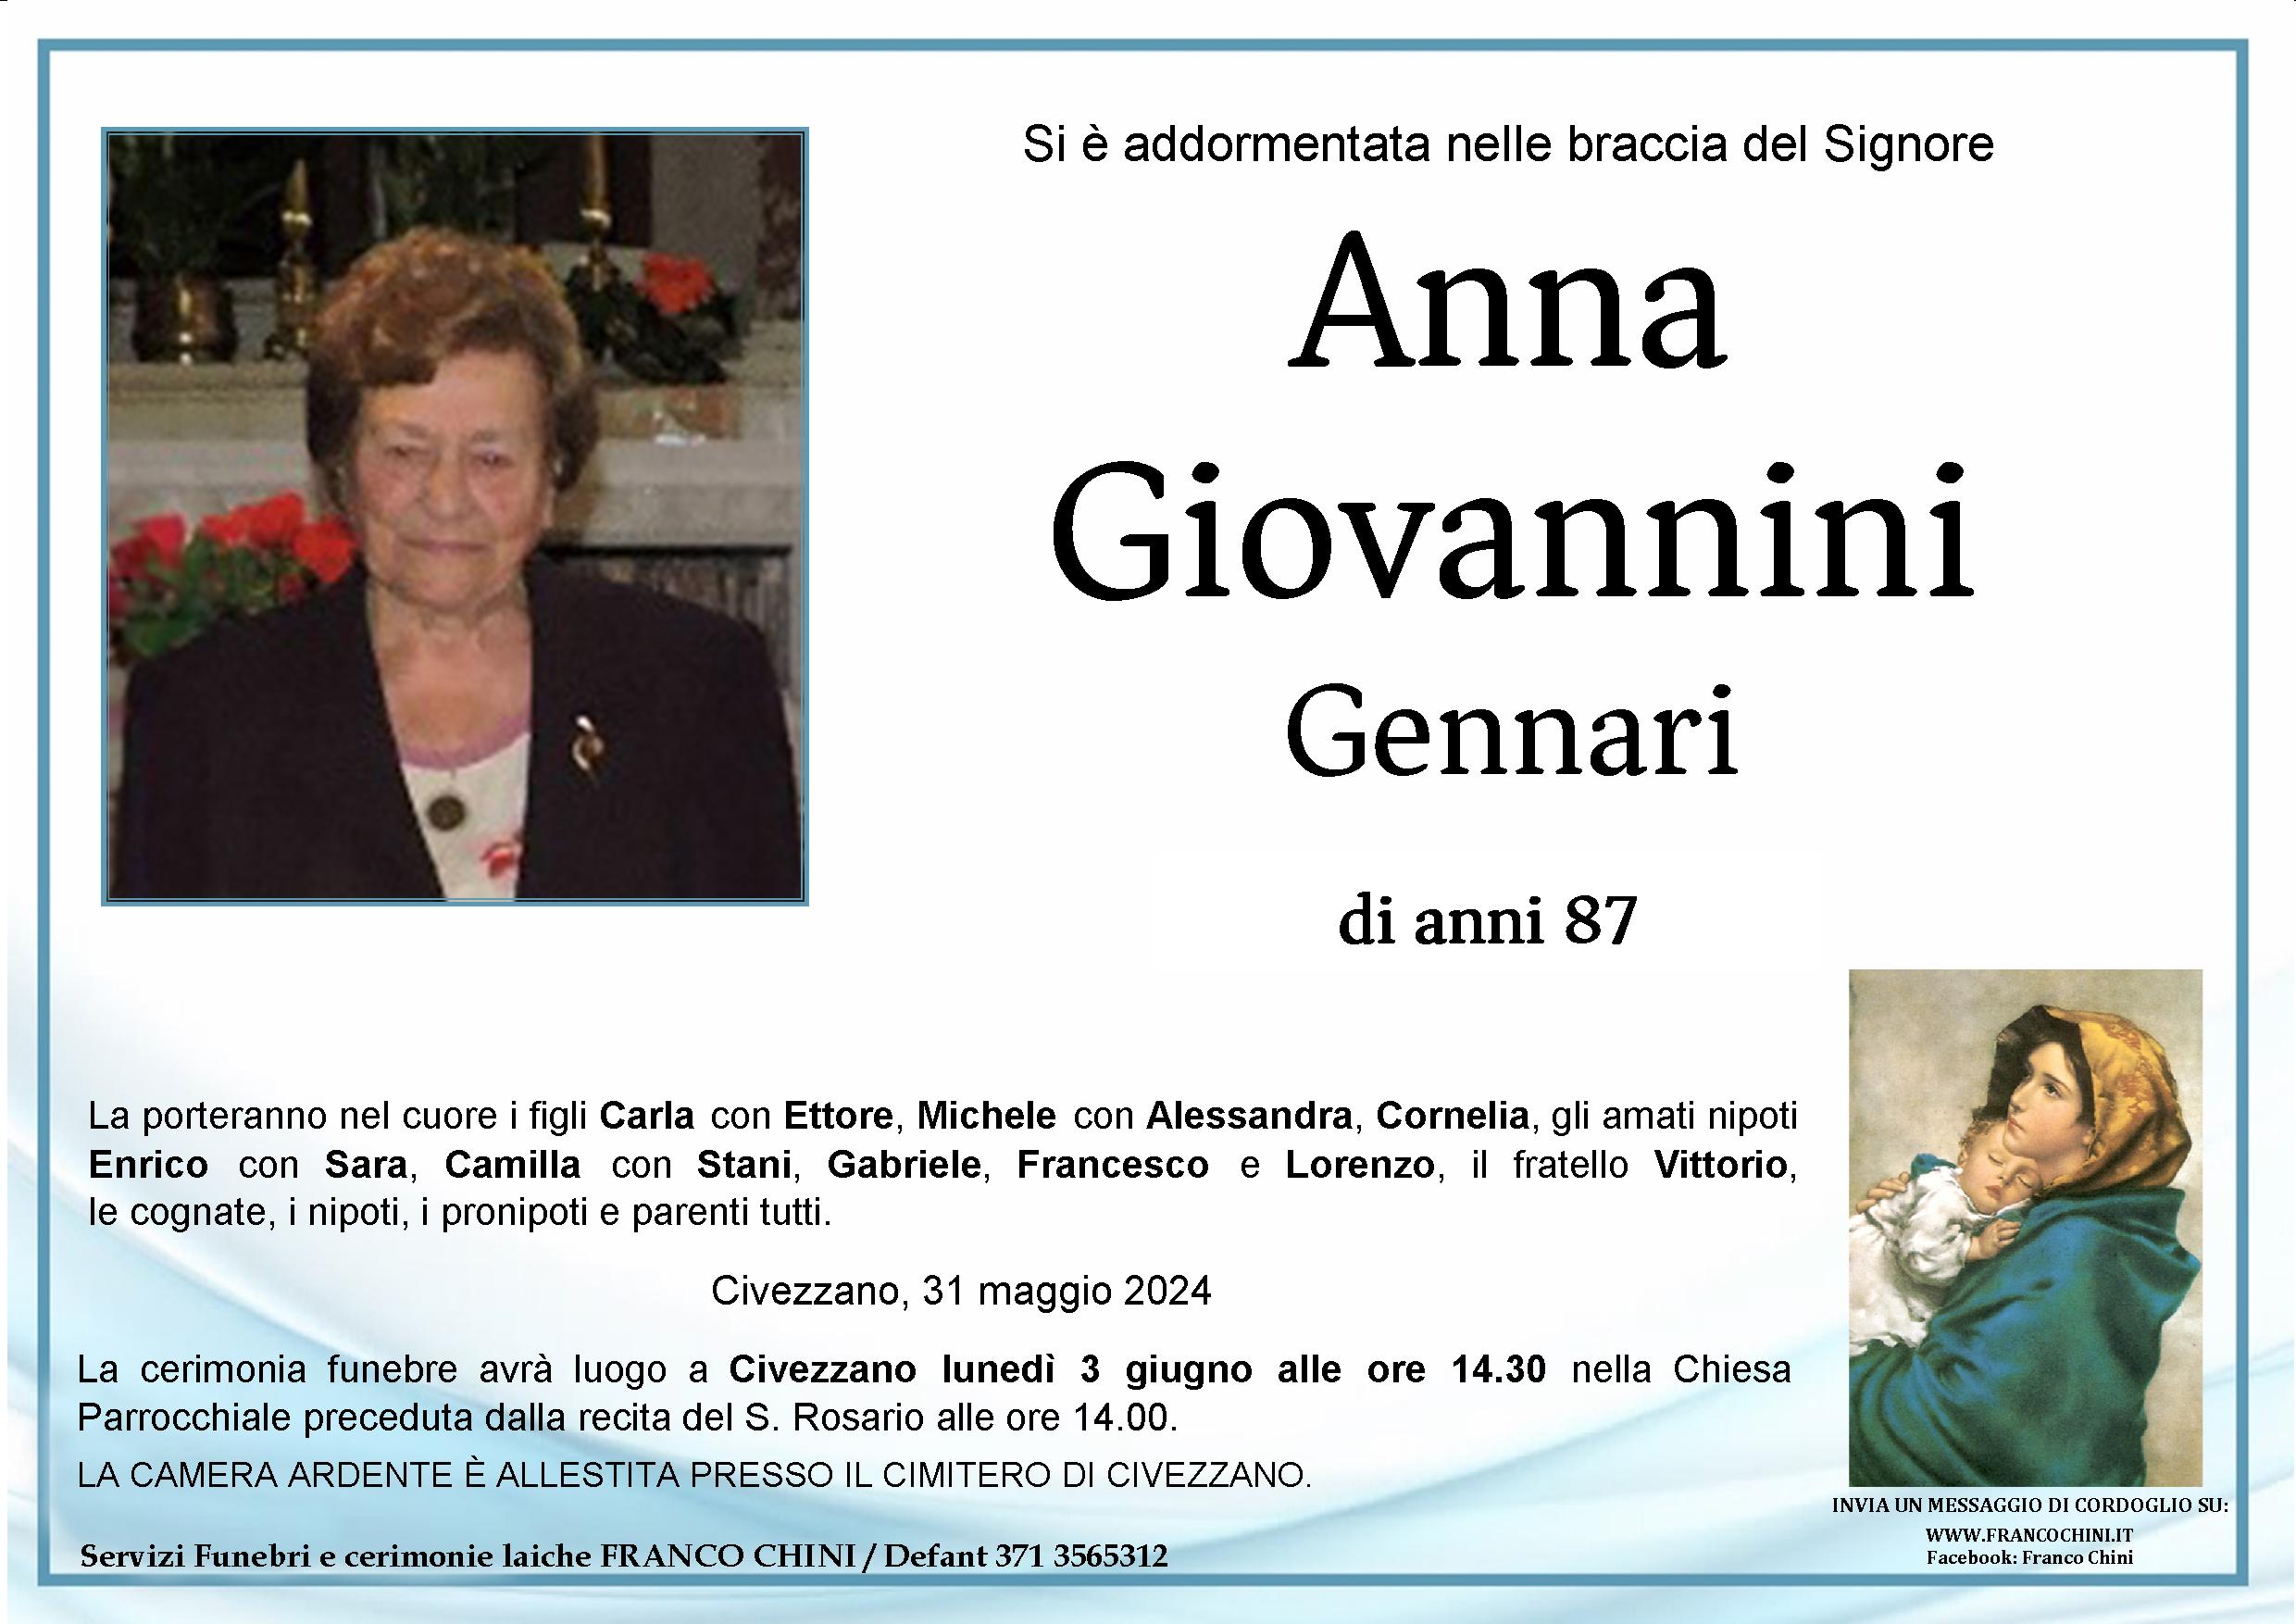 Anna Giovannini Gennari